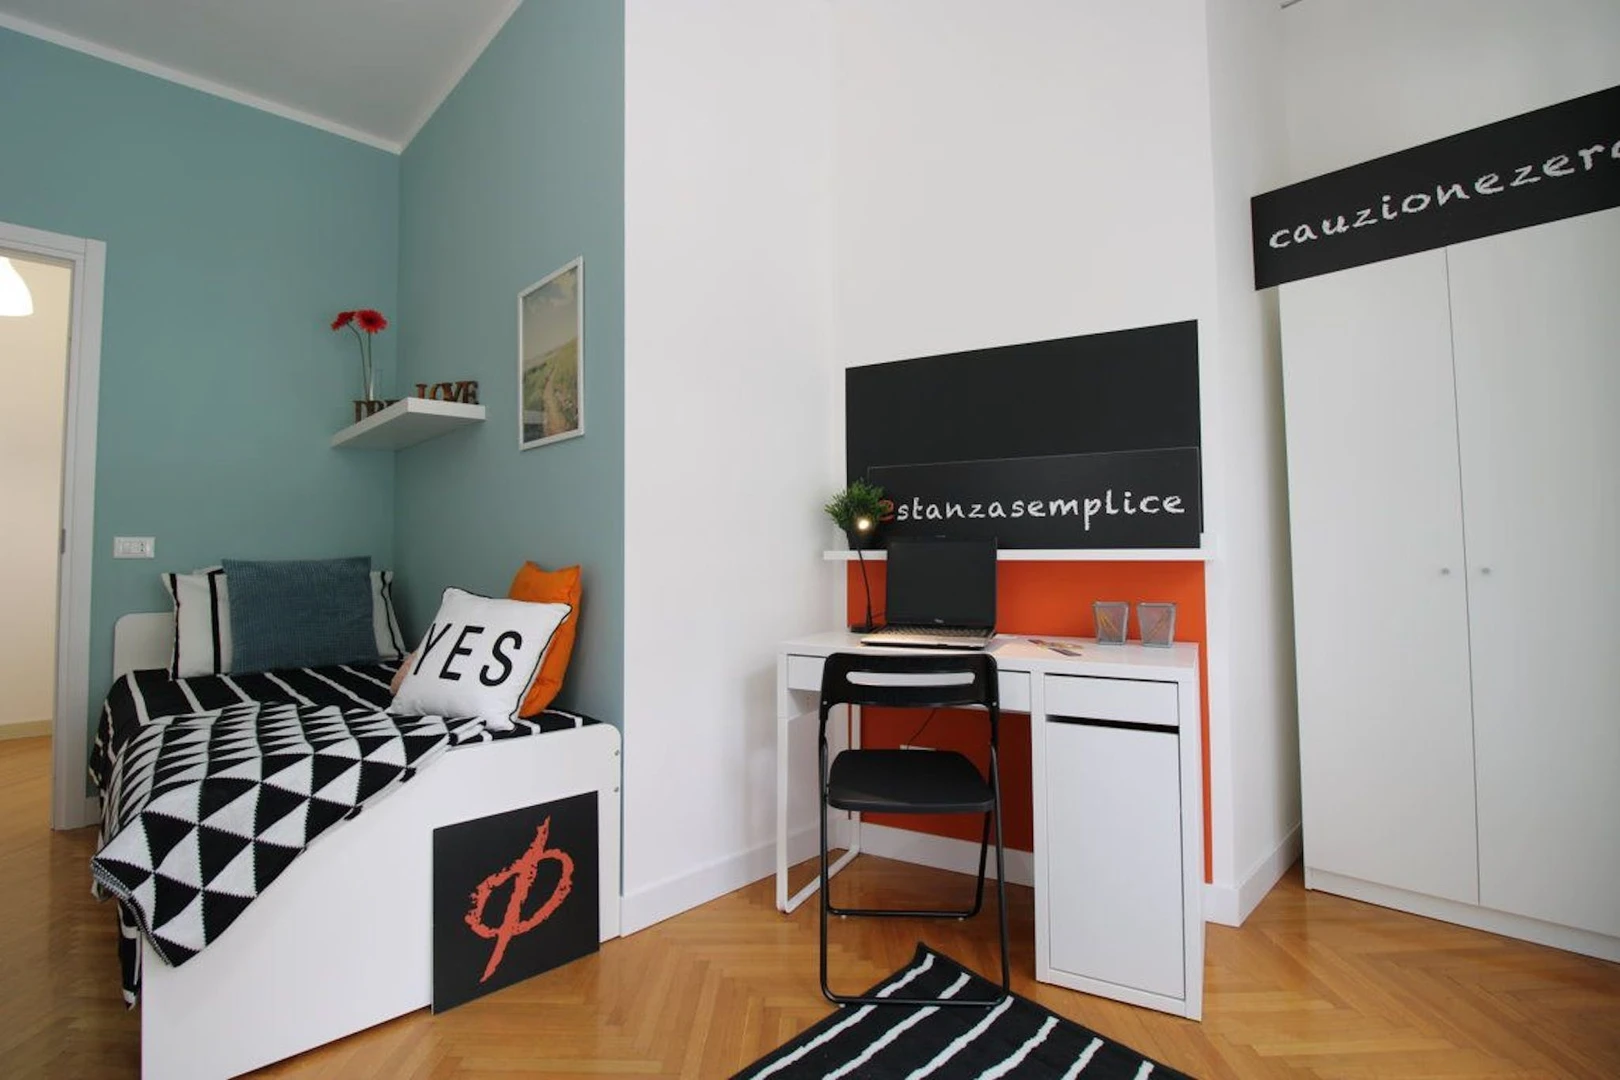 Alquiler de habitación en piso compartido en modena